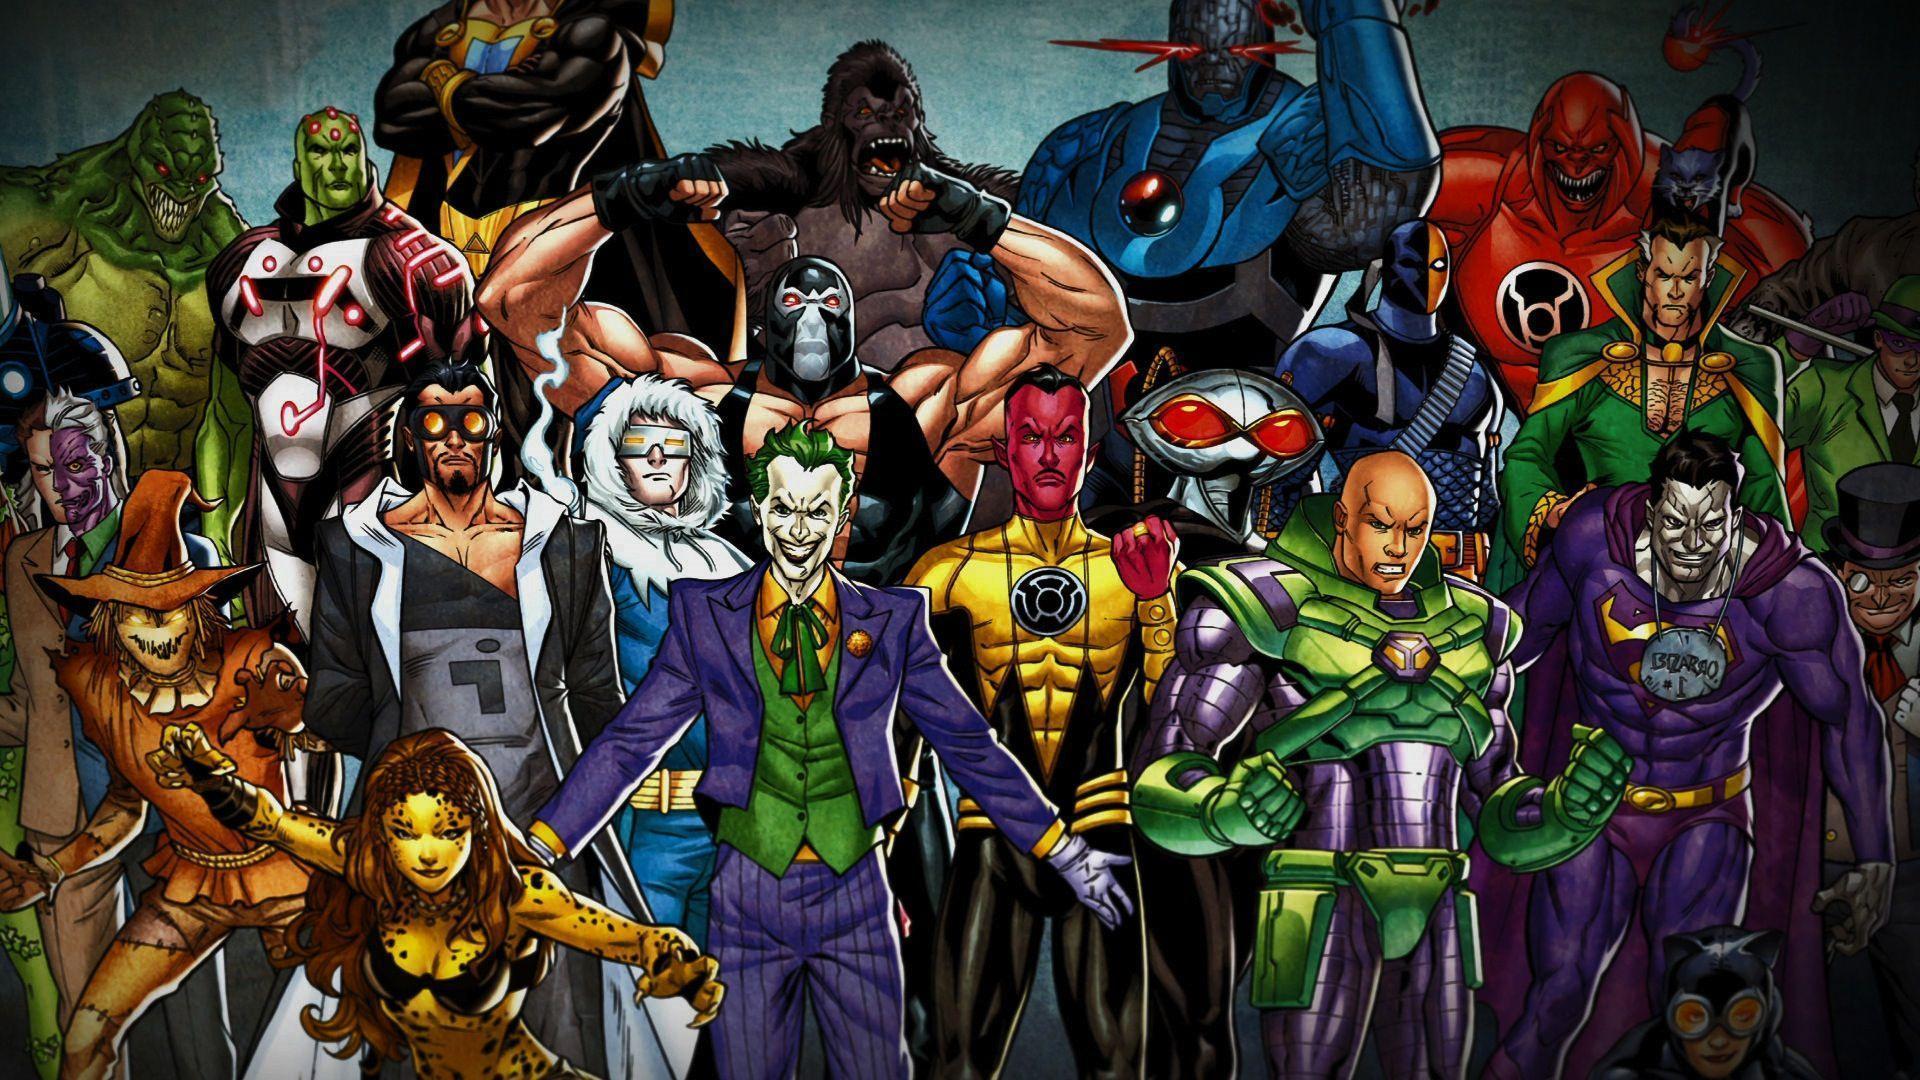 HEROES & VILLAINS METRO BOOMIN WALLPAPERS in 2023  Superhero wallpaper,  Digital graphic design, Hero wallpaper